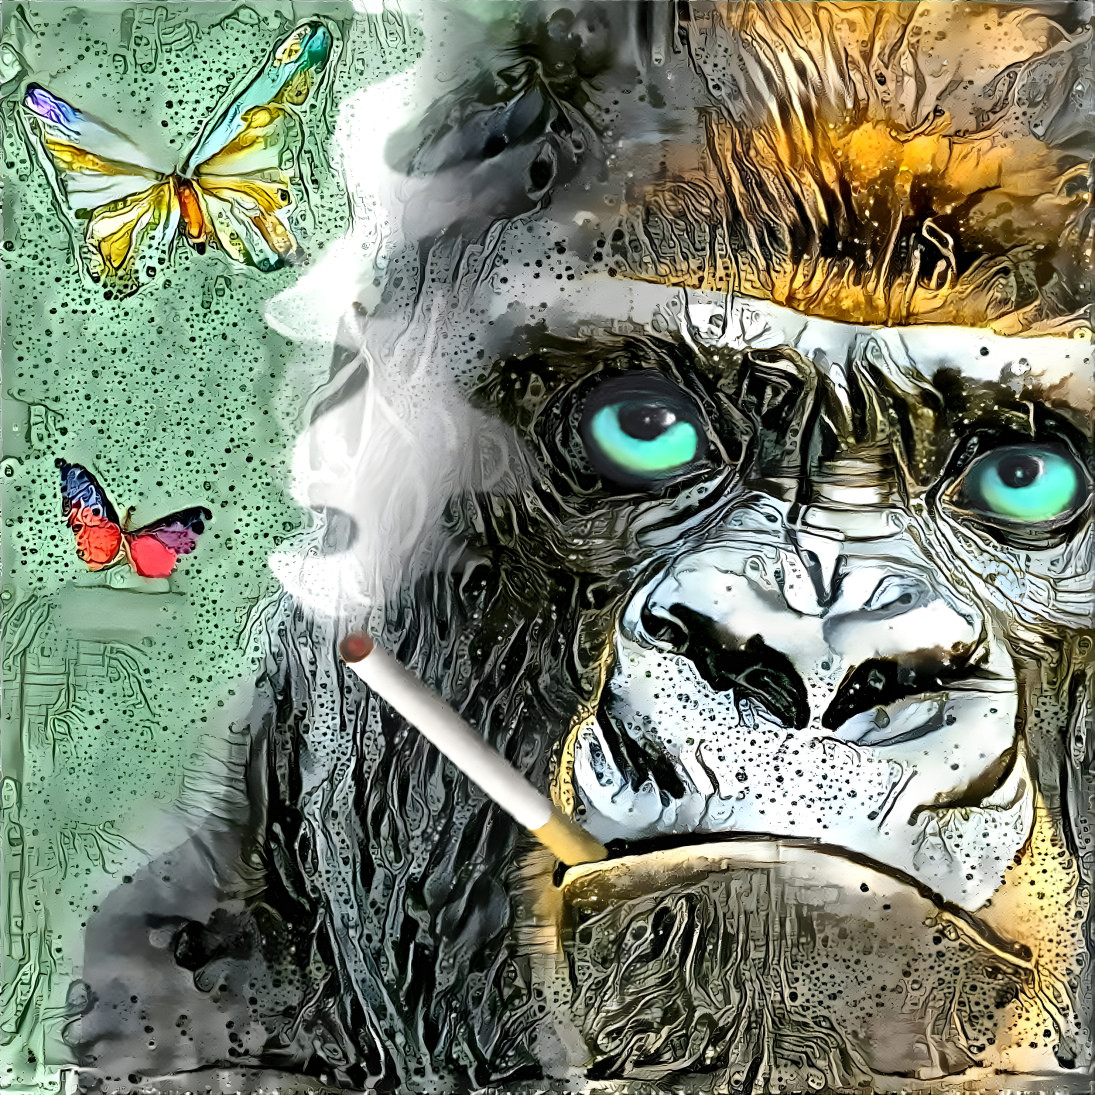 Smoking gorilla